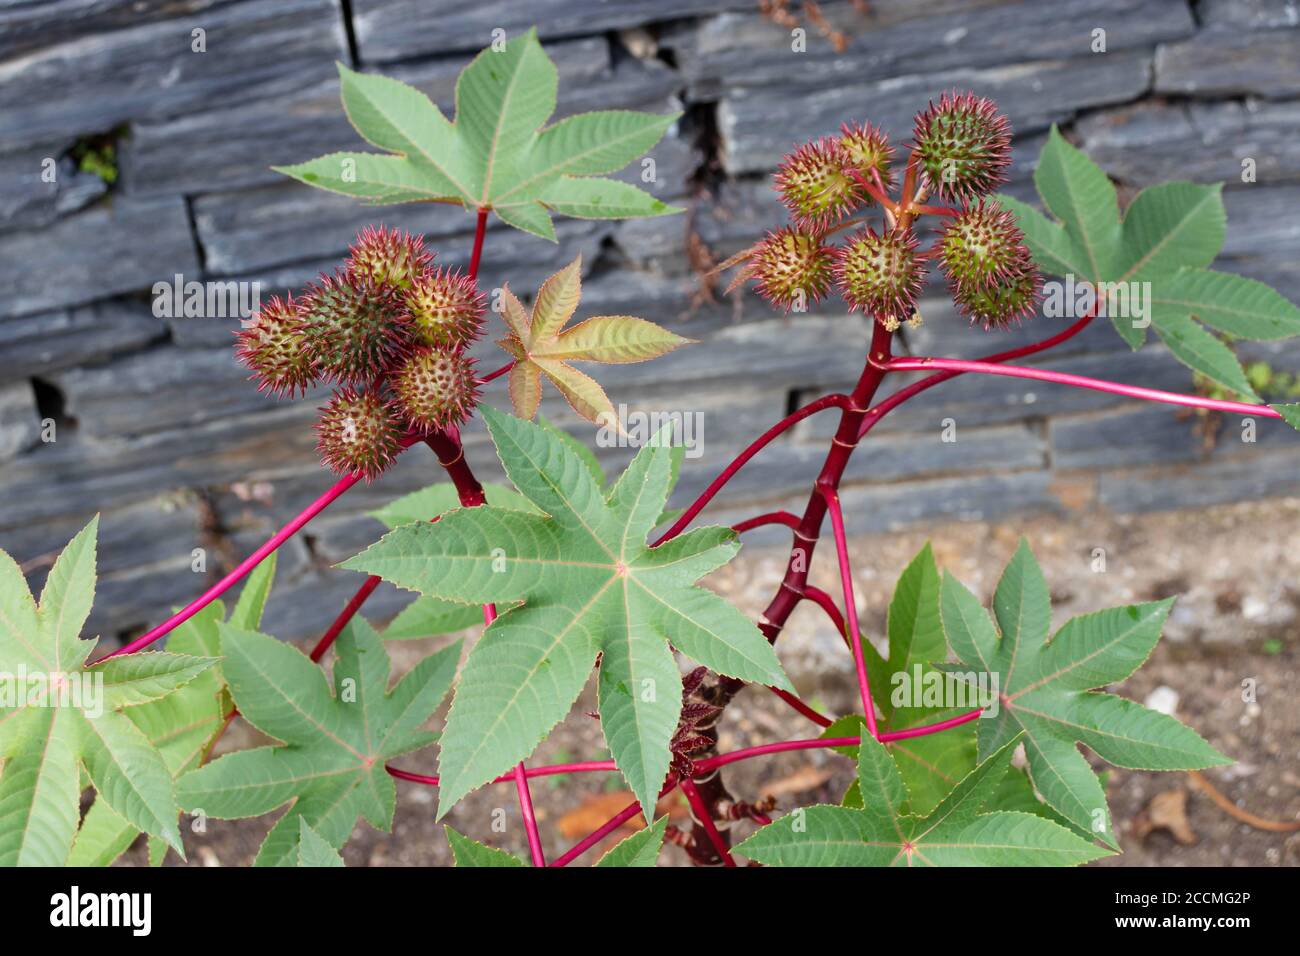 Rizinusölpflanze mit Samenkapseln und Blättern. Ricinus communis Früchte. Stockfoto